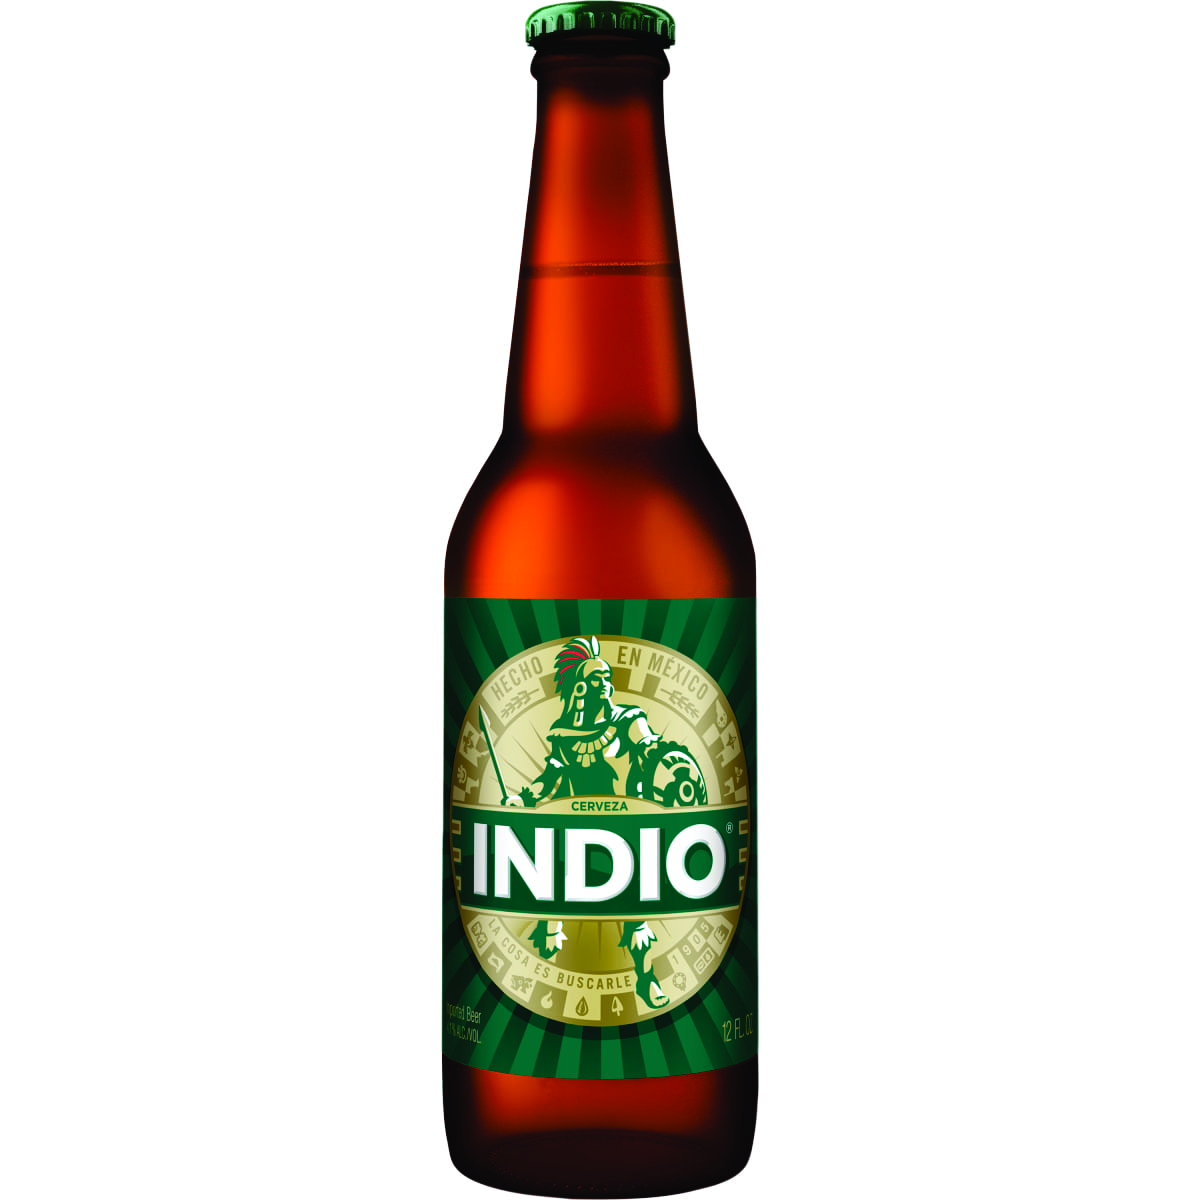 Indio - Finley Beer